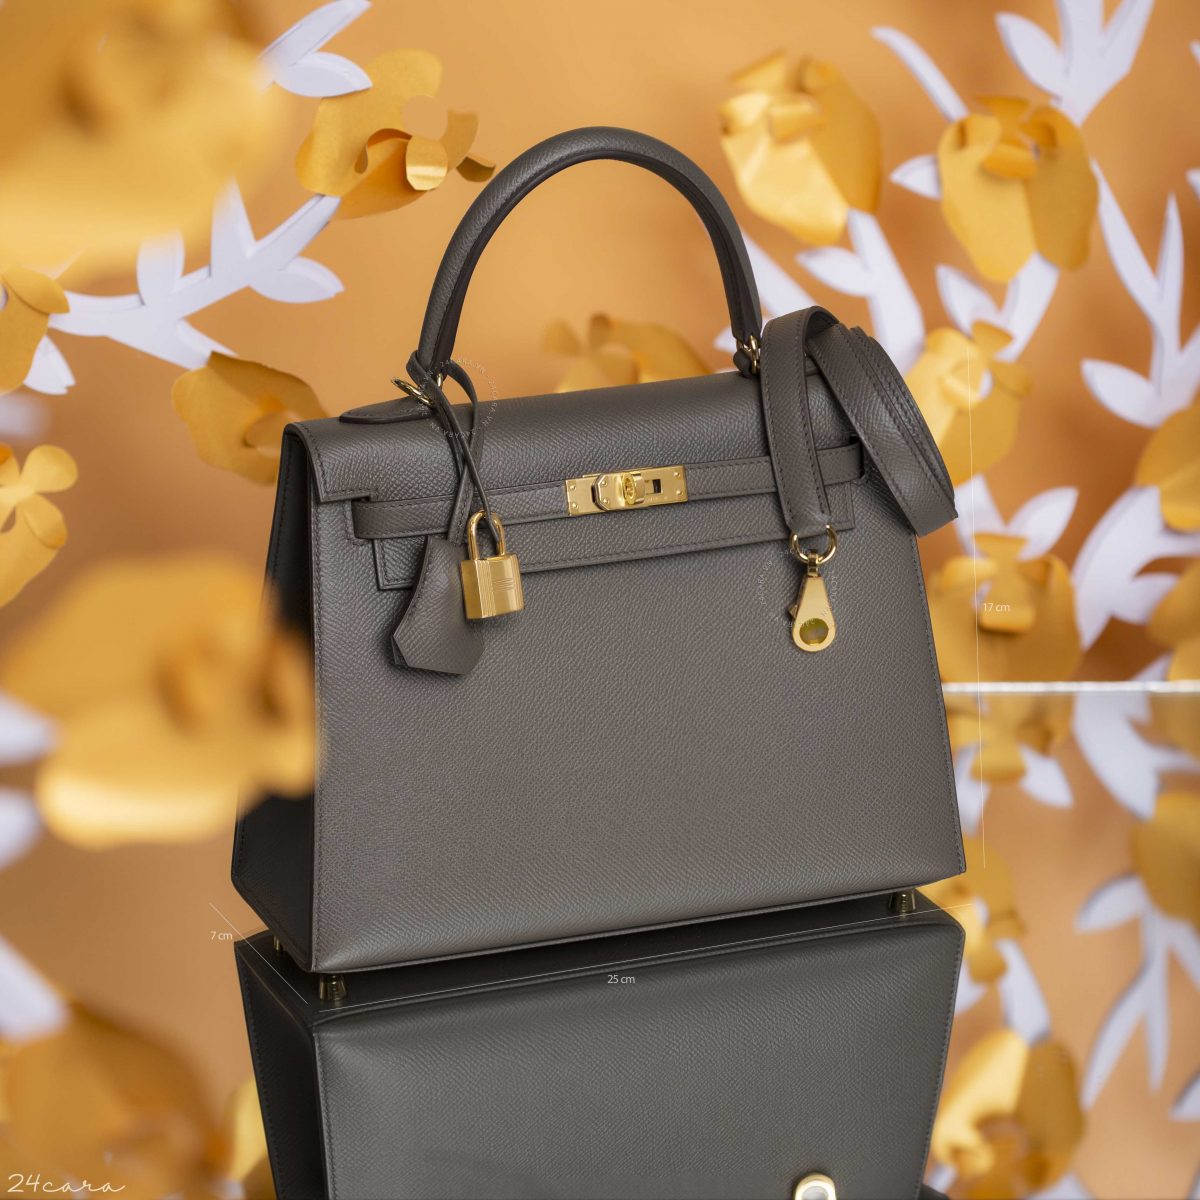 Túi Hermes Kelly nữ màu nâu xách tay chất lượng cao giá ưu đãi